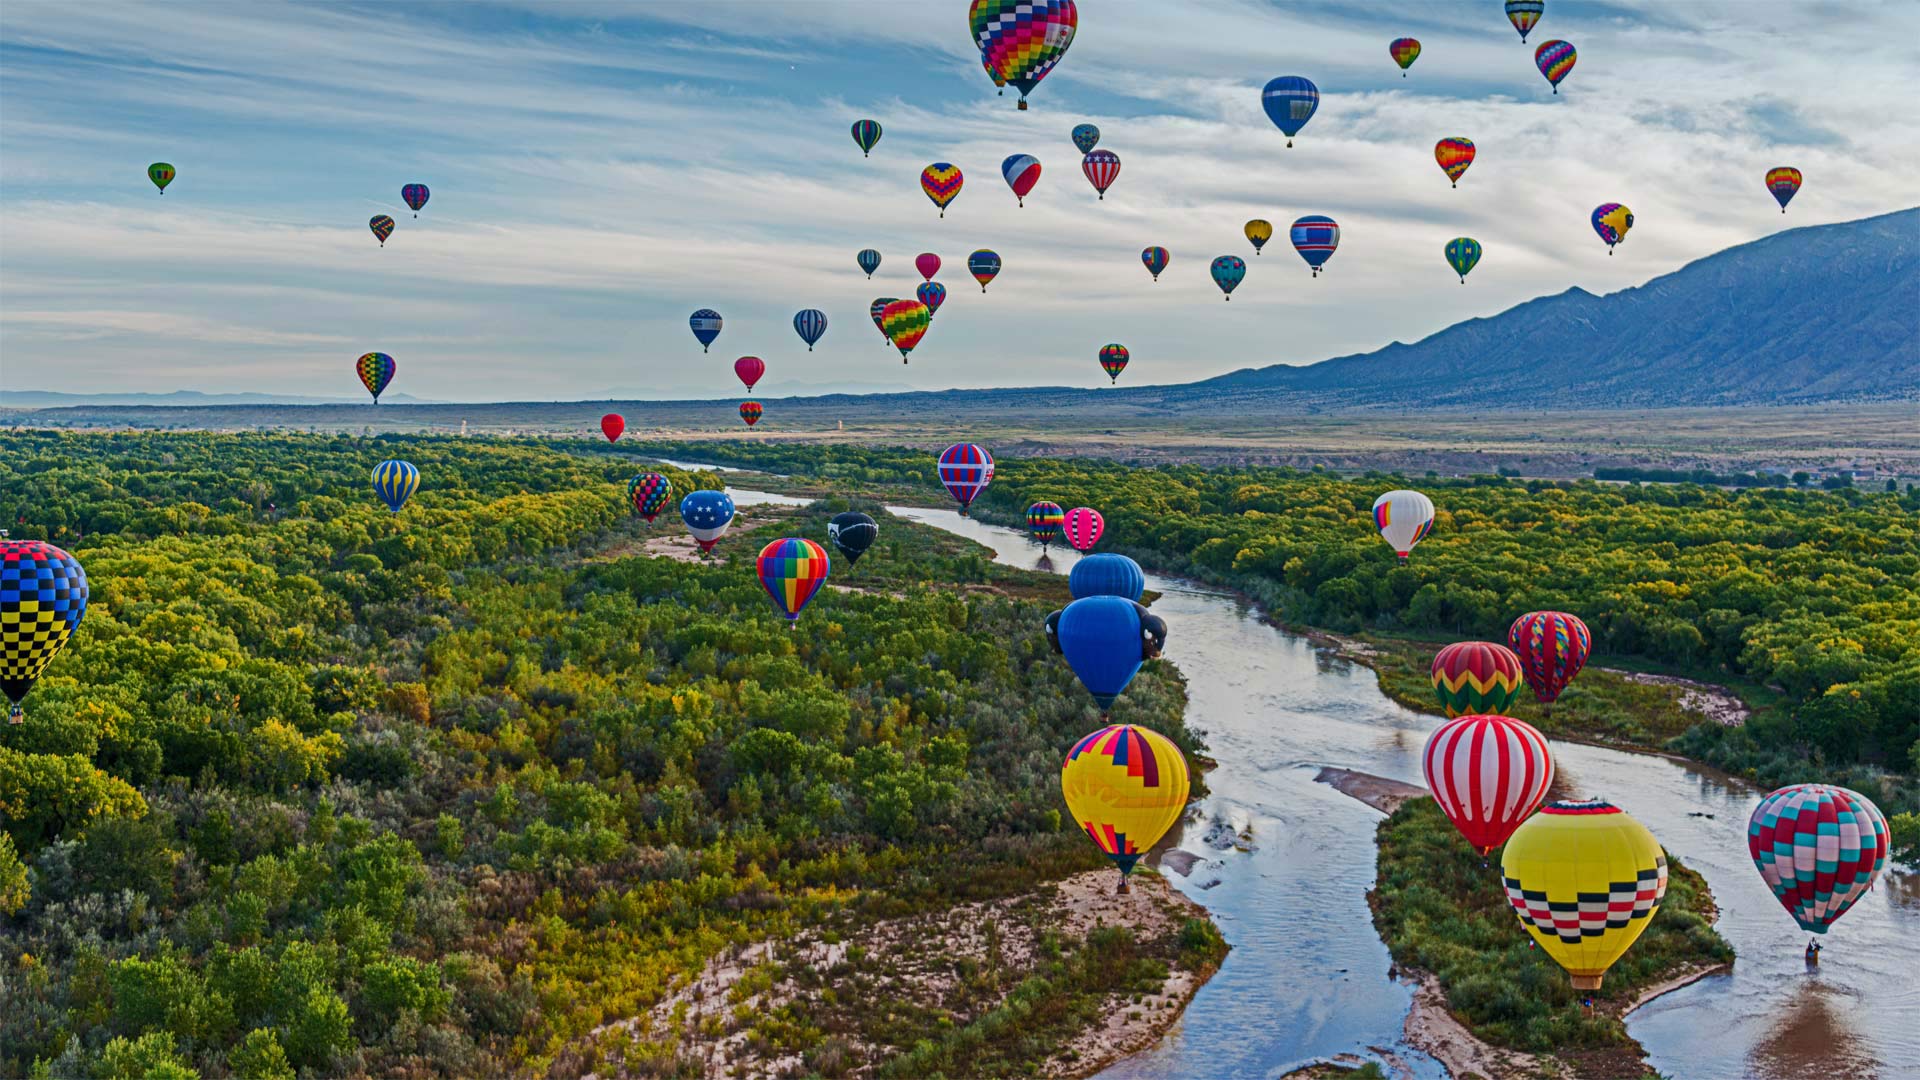 Hot air balloons at the Albuquerque International Balloon Fiesta in Albuquerque, New Mexico - gmeland/Shutterstock)